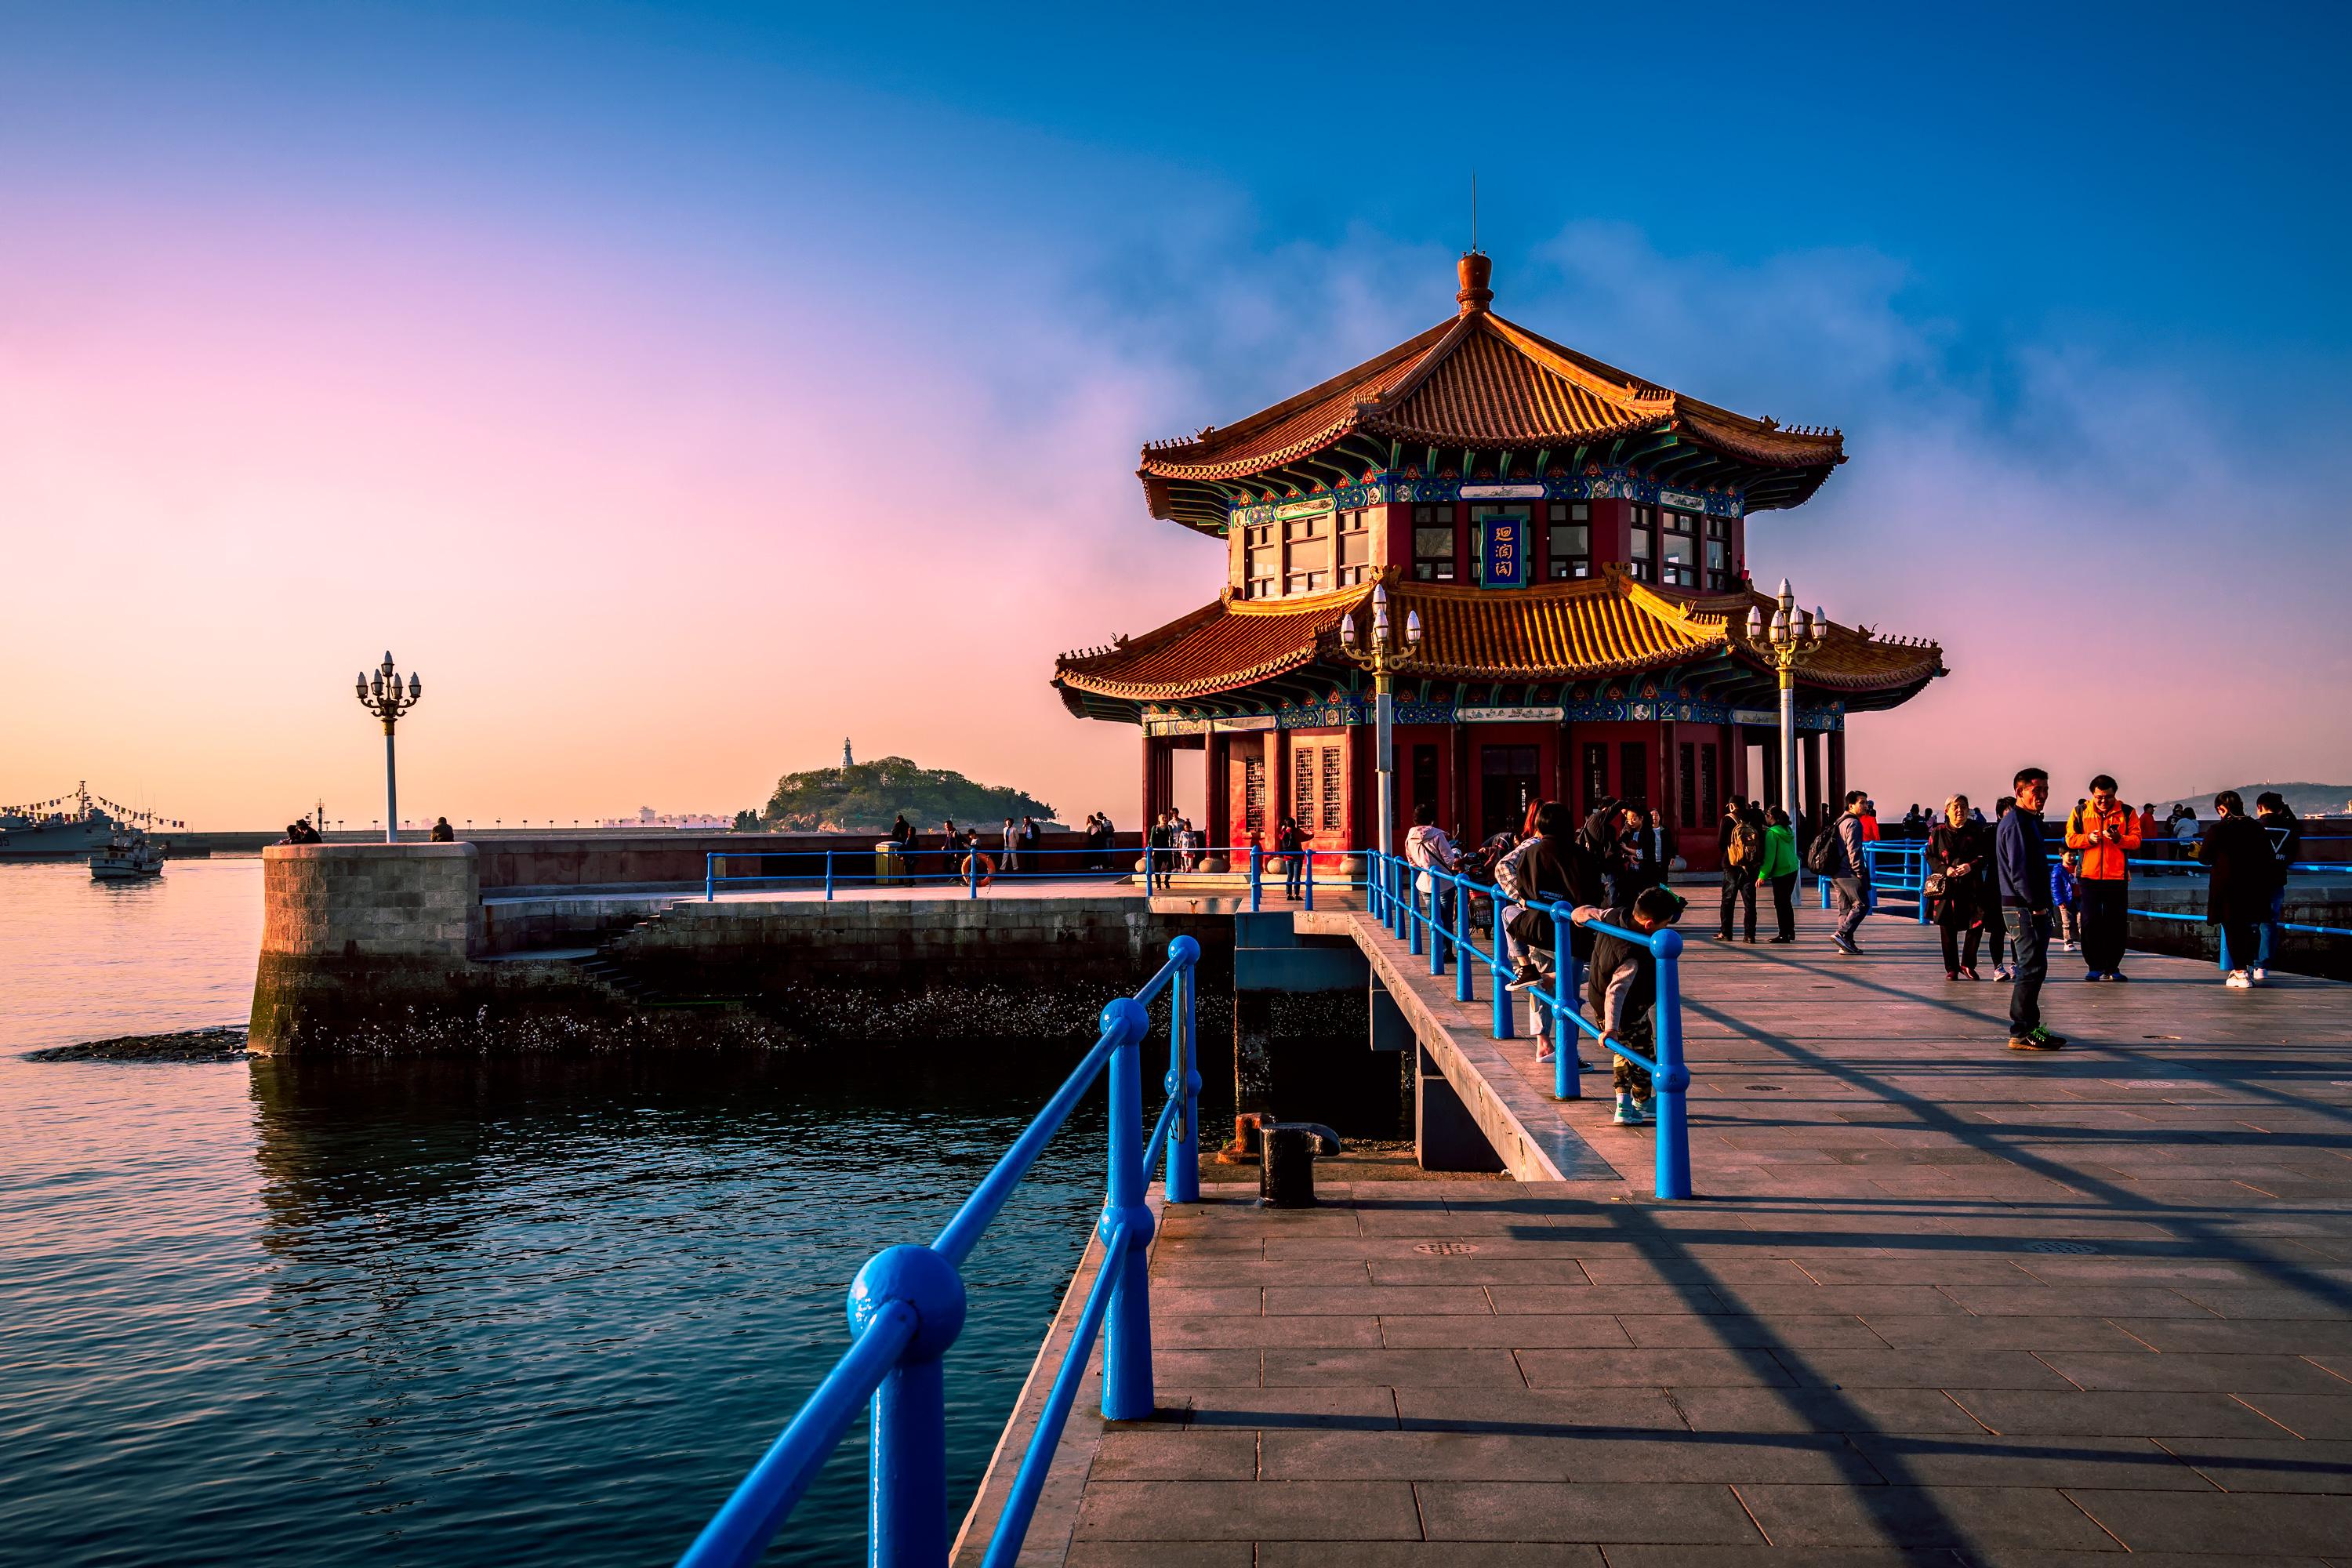 青岛栈桥:一个让你心旷神怡的海景胜地